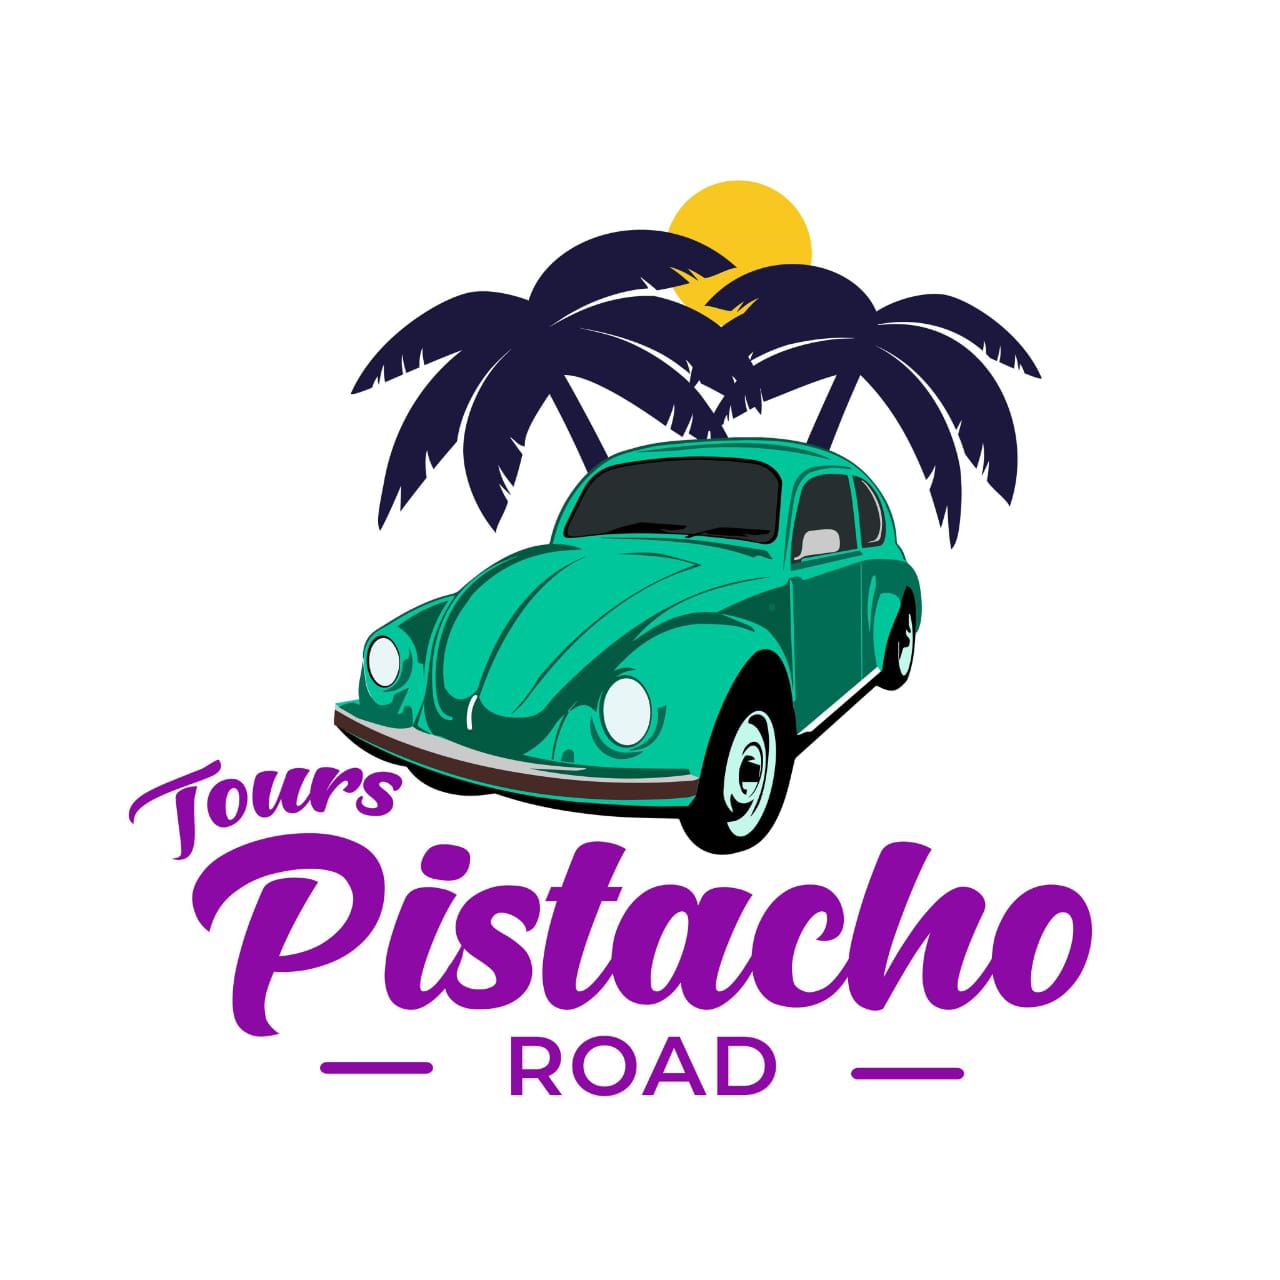 Tours Pistacho Road